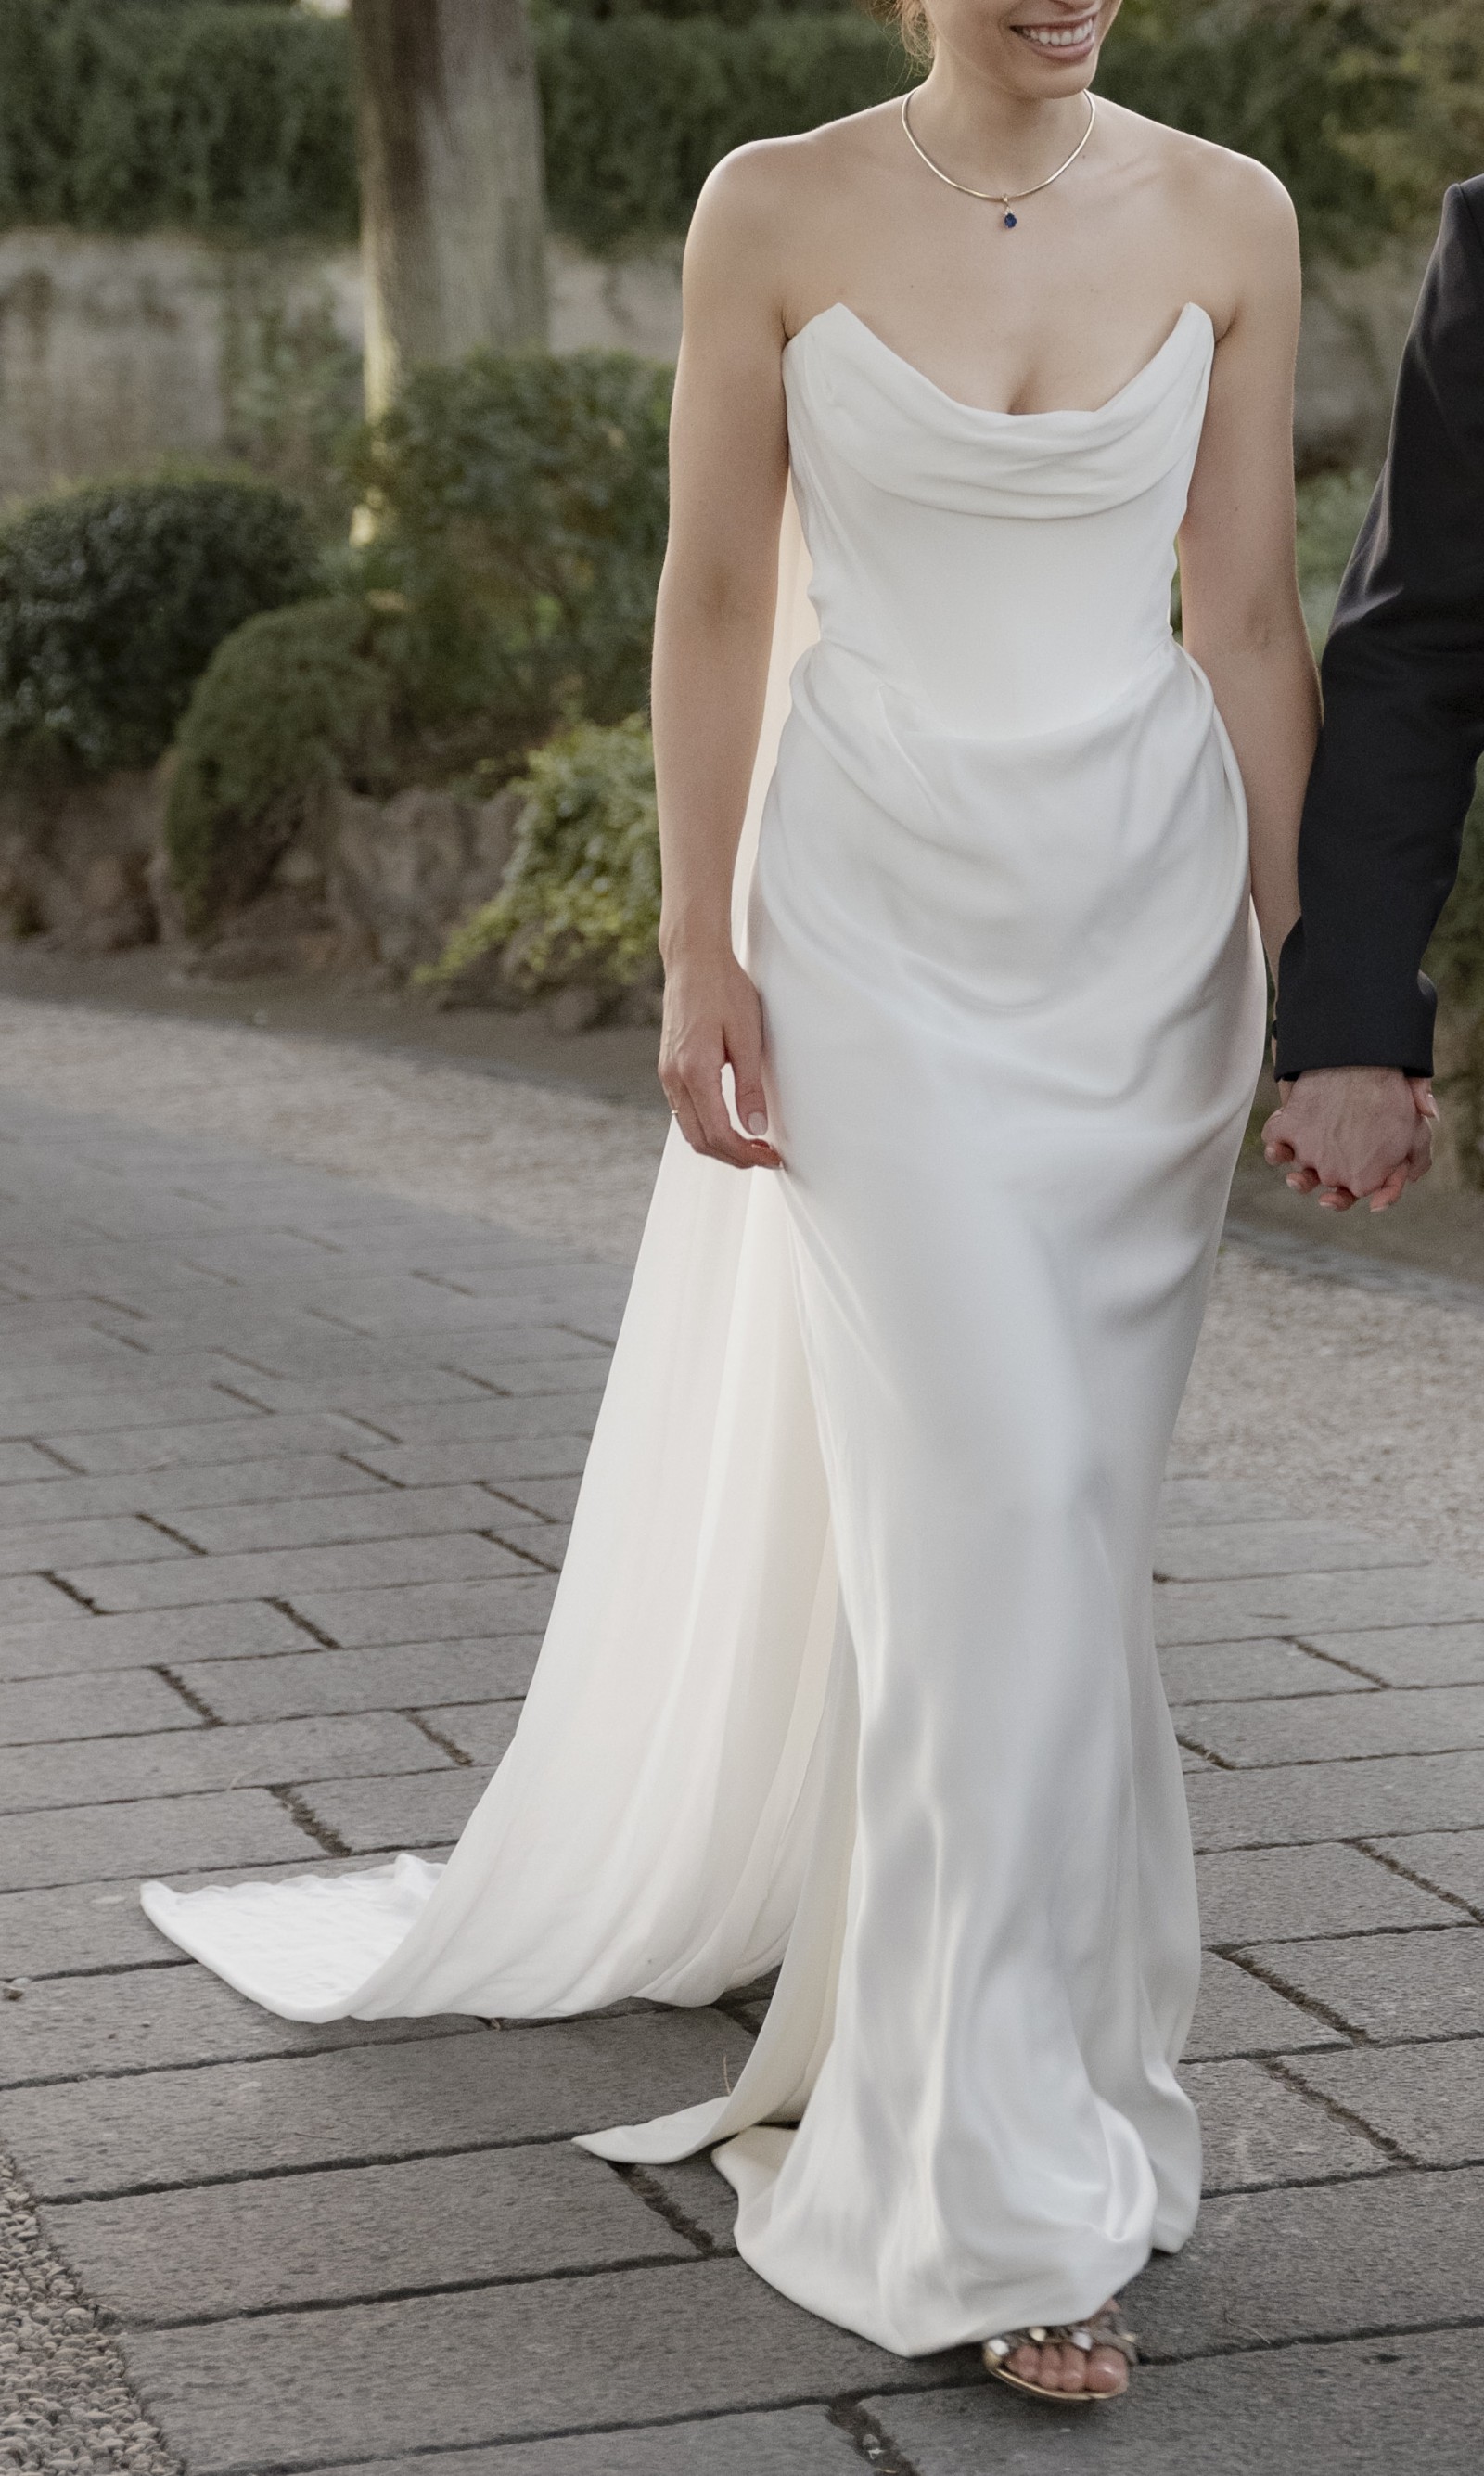 Vivienne Westwood Galaxy Cape Gown Wedding Dress Save 26% - Stillwhite